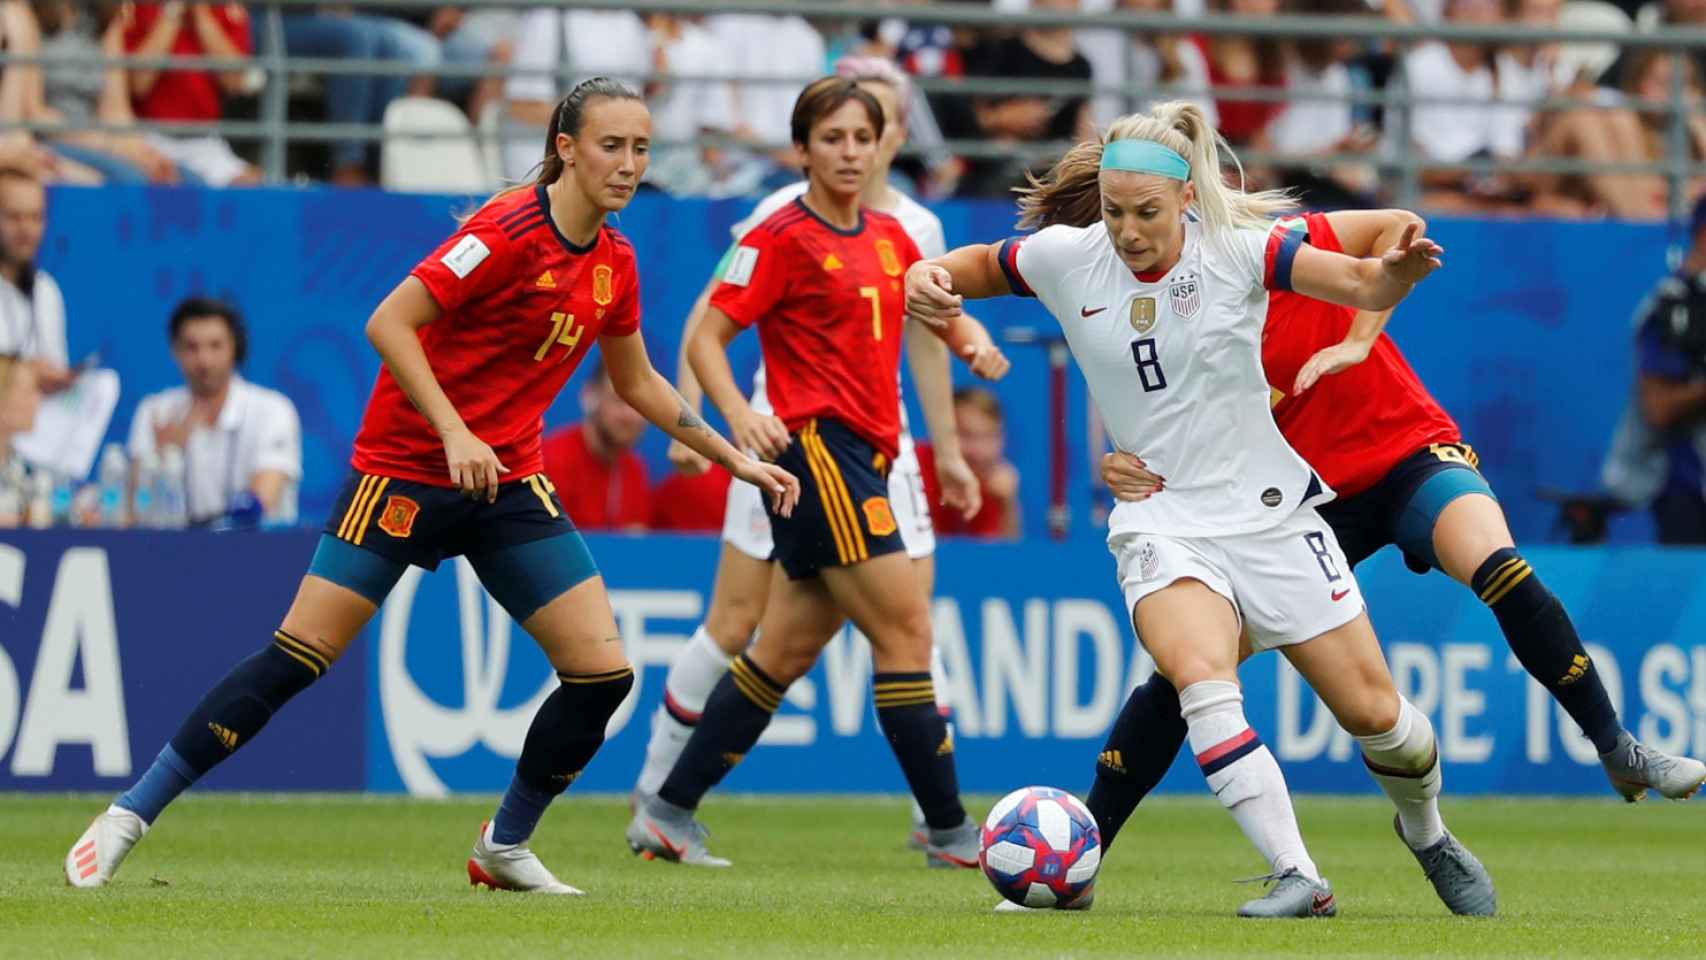 Ertz junto a Vicky Losada y Torrecilla, en un momento del partido entre España y EEUU